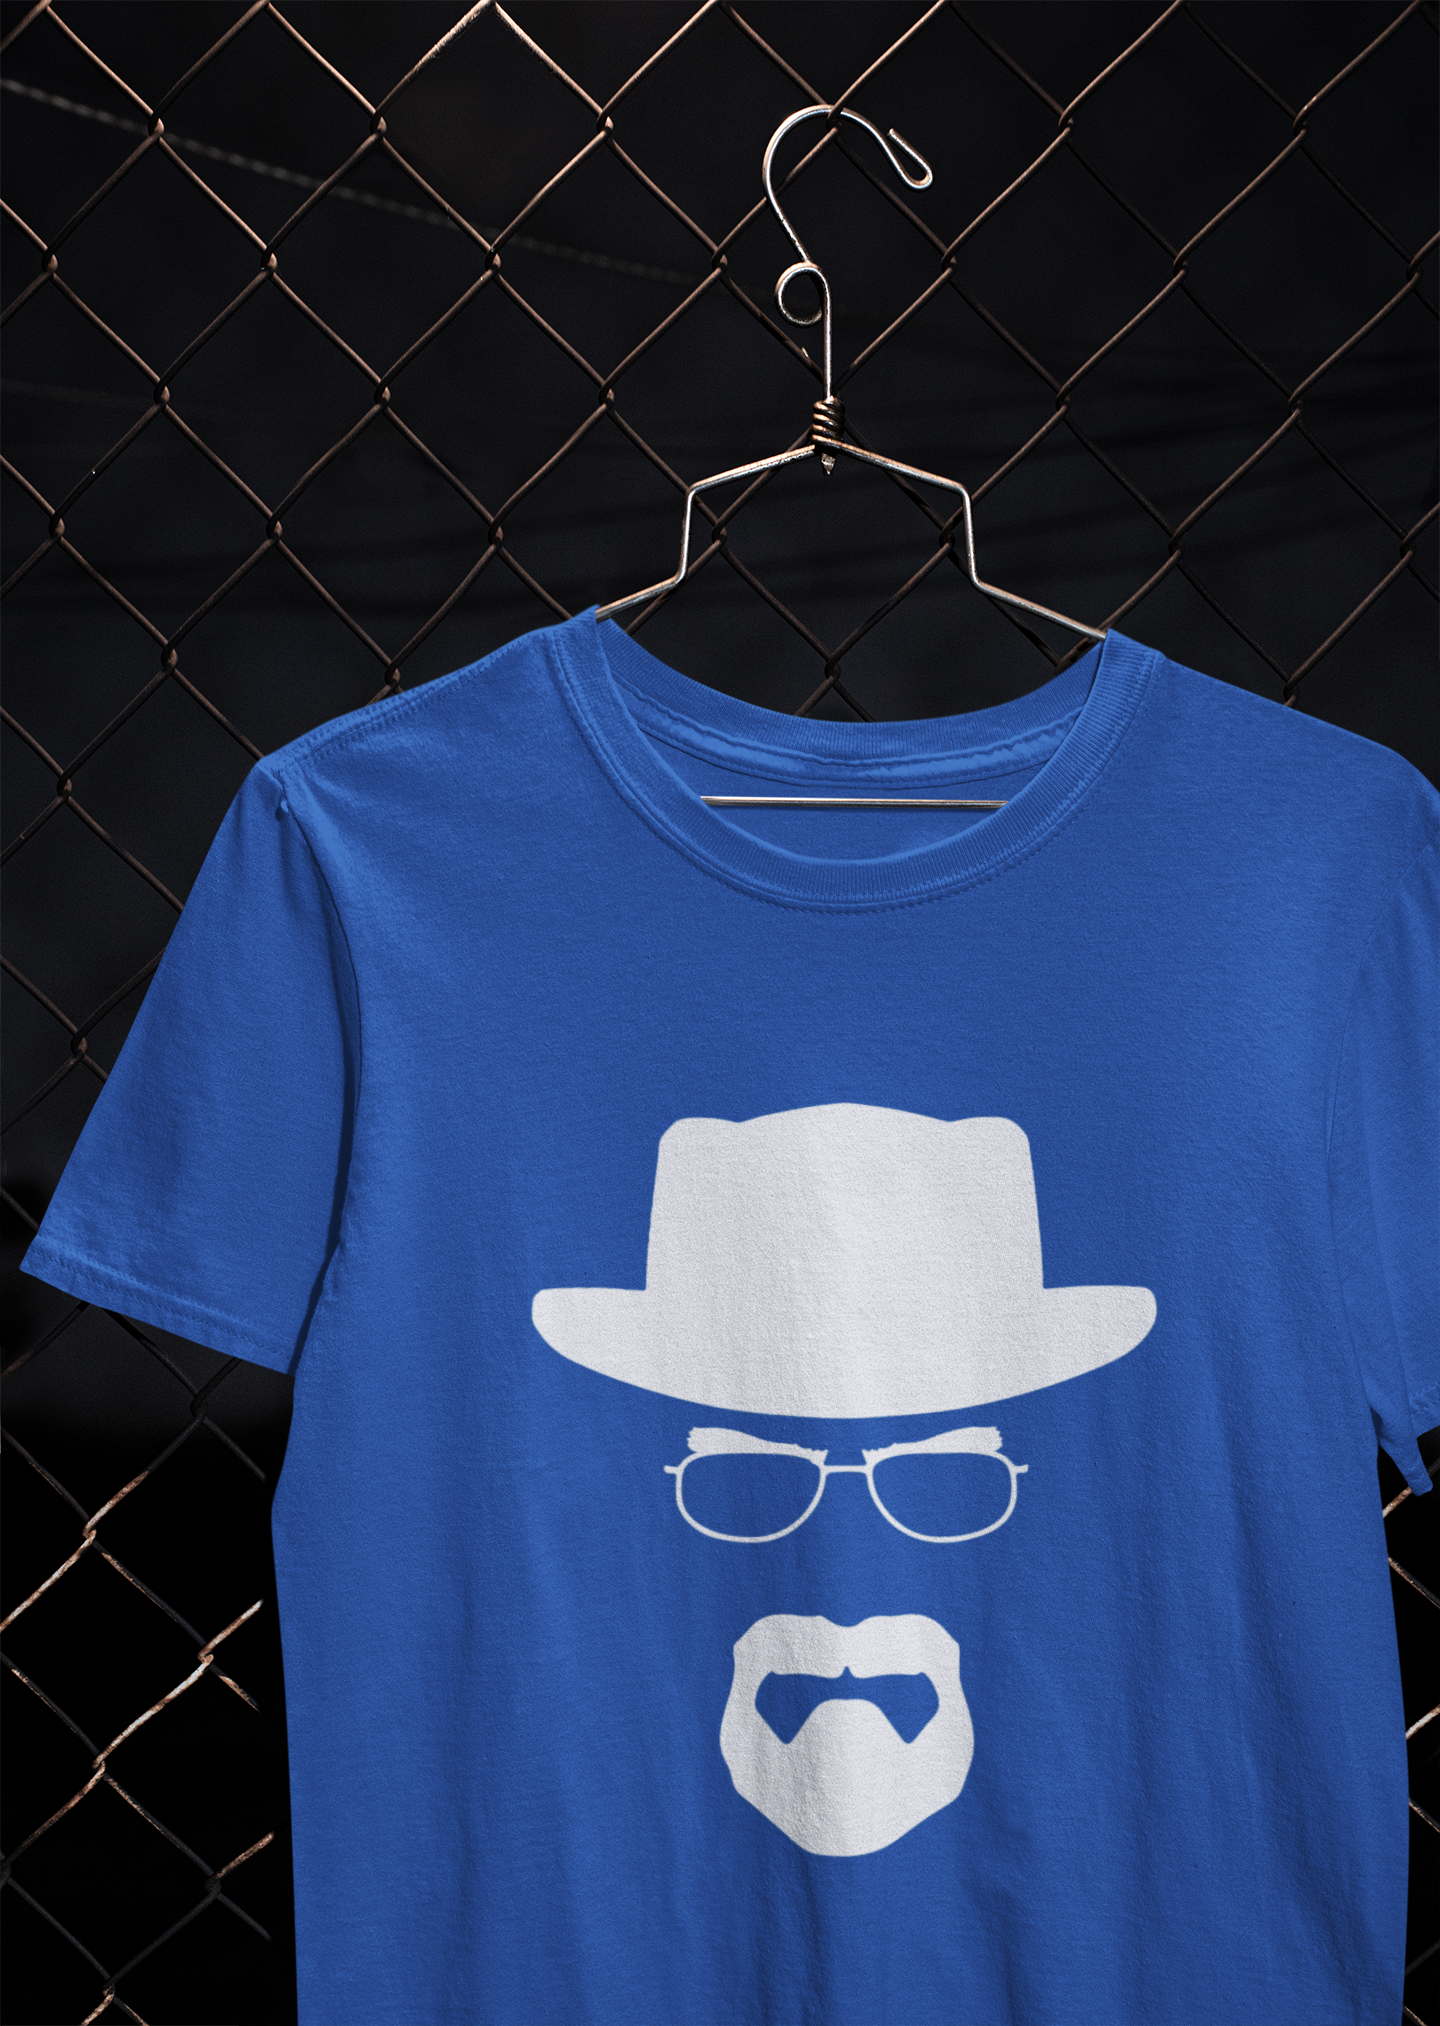 Heisenberg Breaking Bad Web Series Mens Half Sleeves T-shirt- FunkyTeesClub